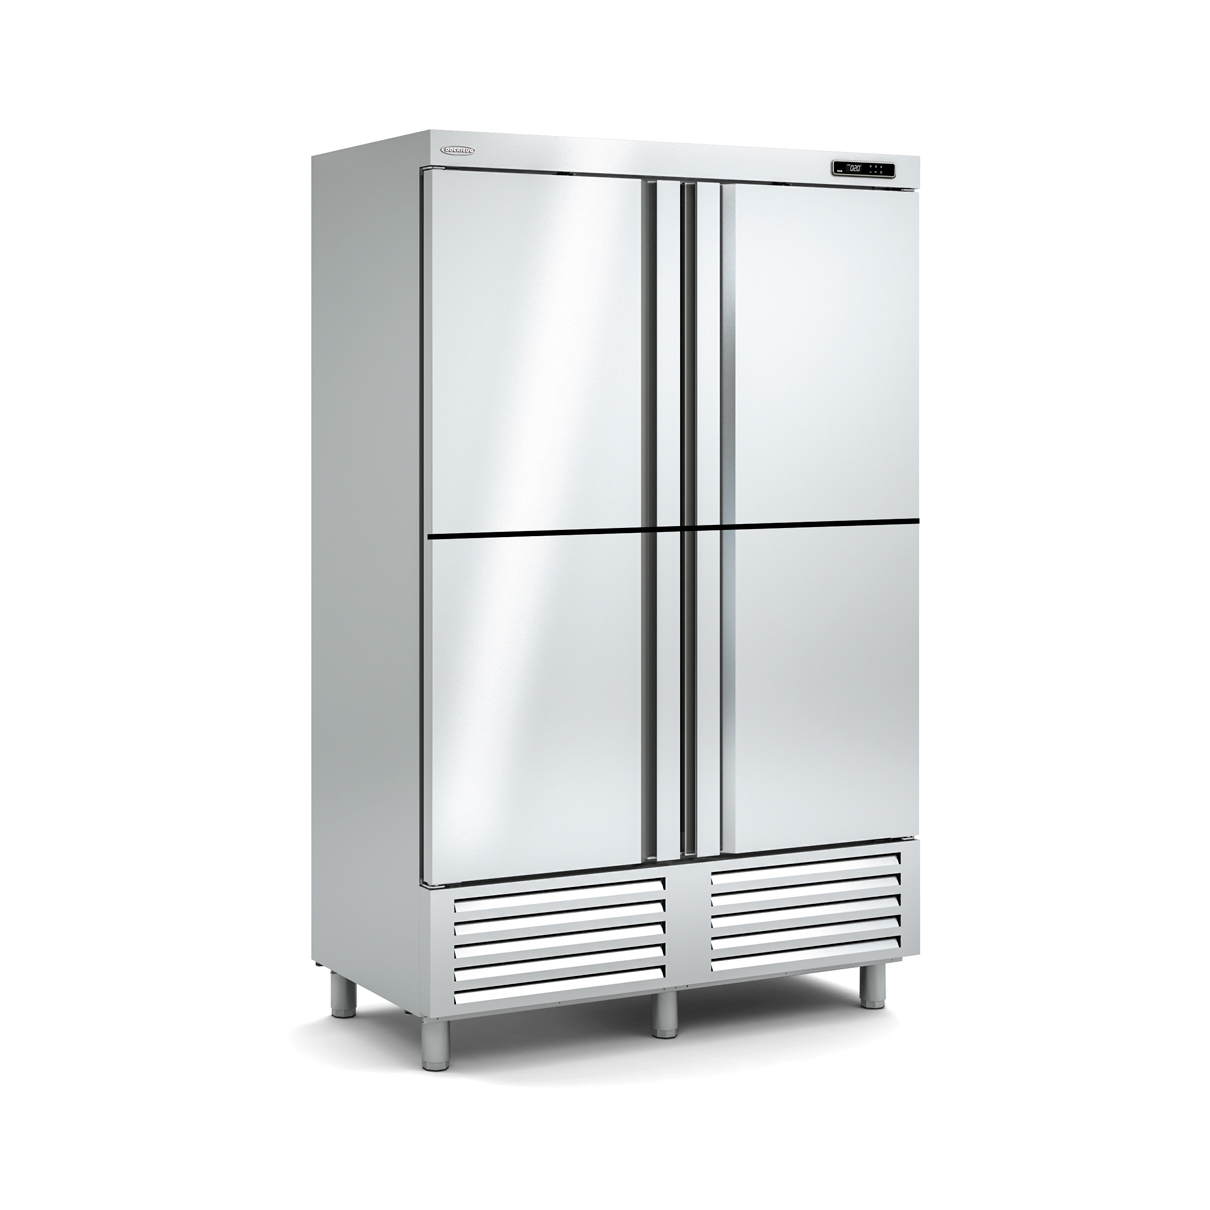 Snack Freezing Cabinet ACS-140-4